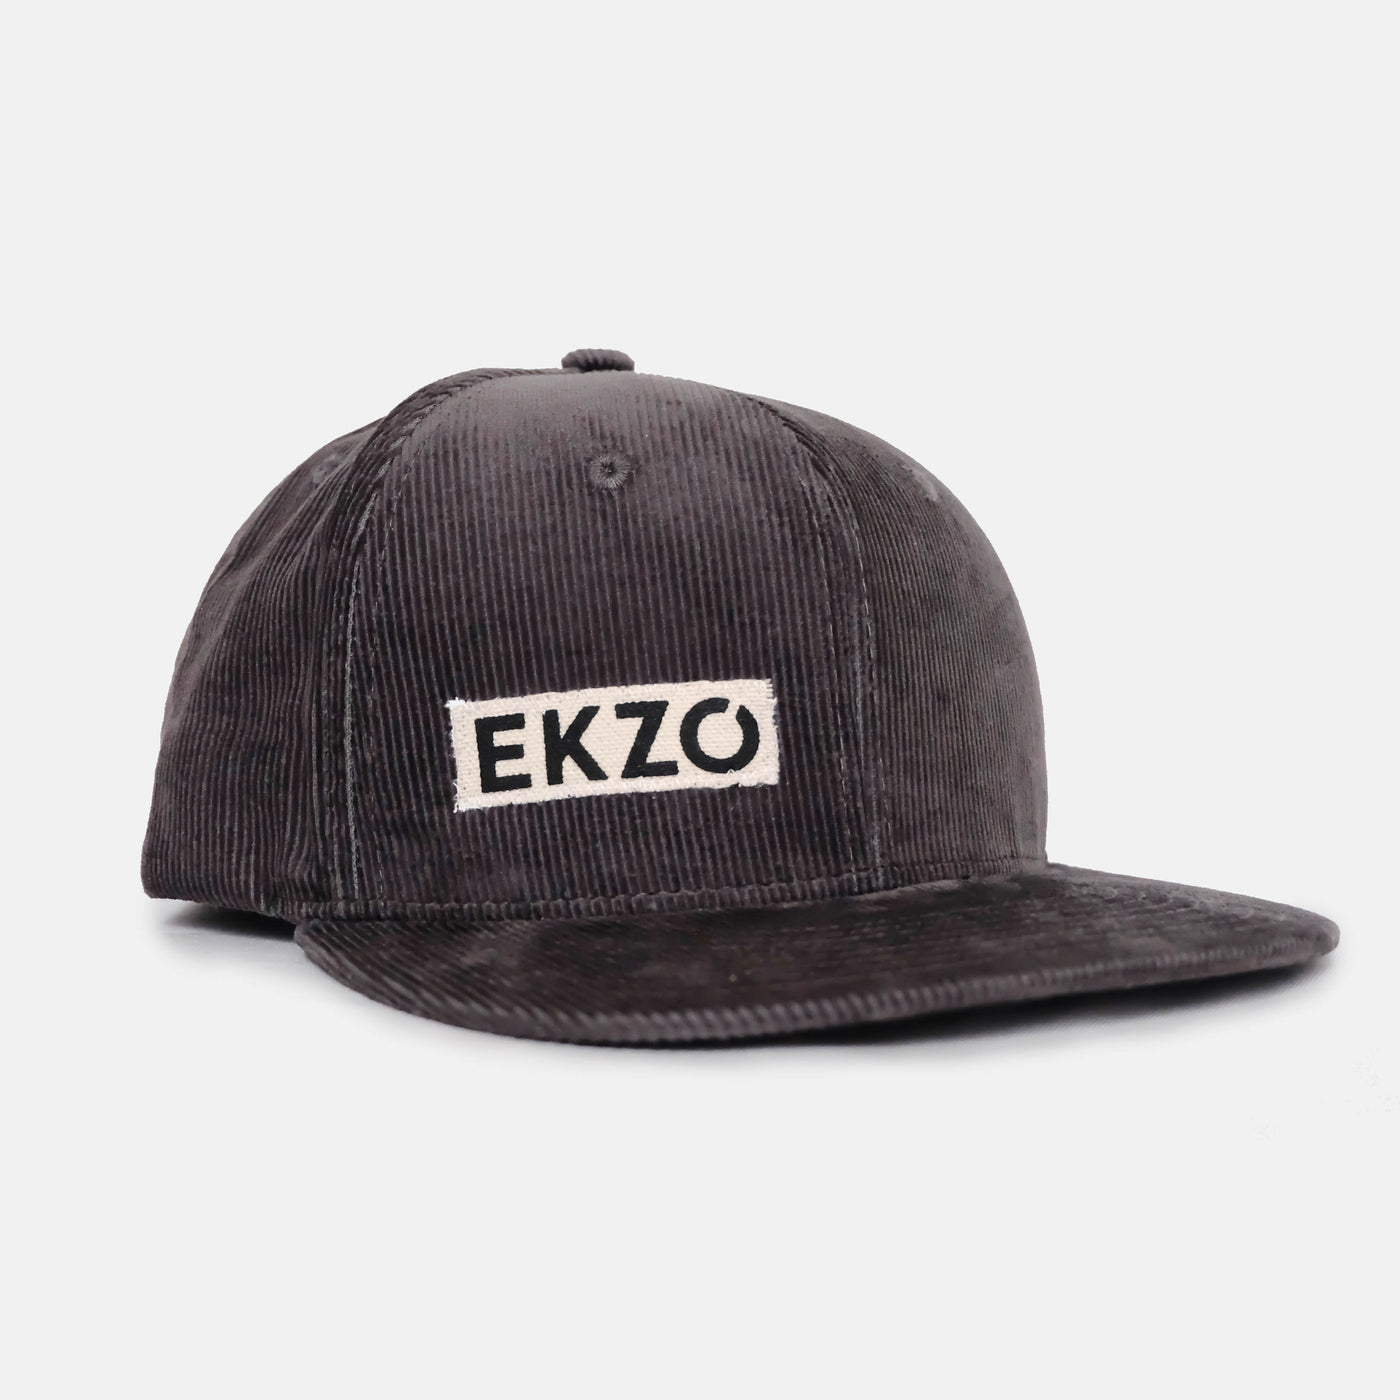 Full Corduroy Hat - Charcoal - EKZO